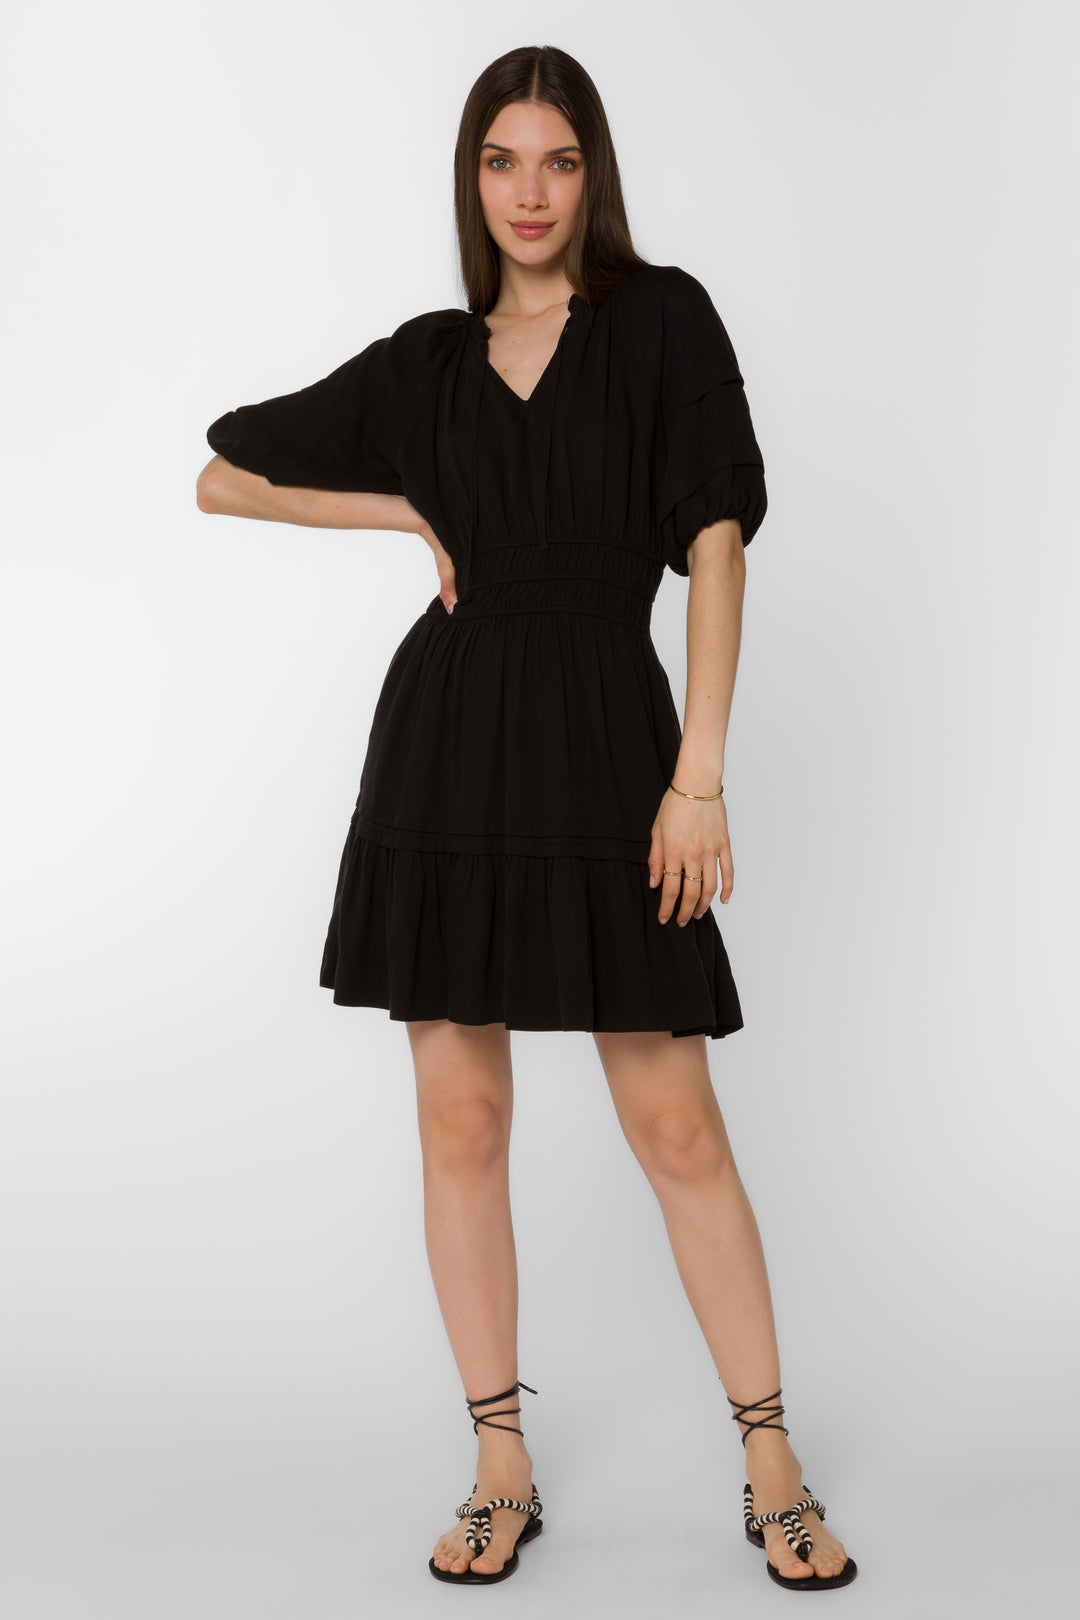 Donna Black Dress - Dresses - Velvet Heart Clothing